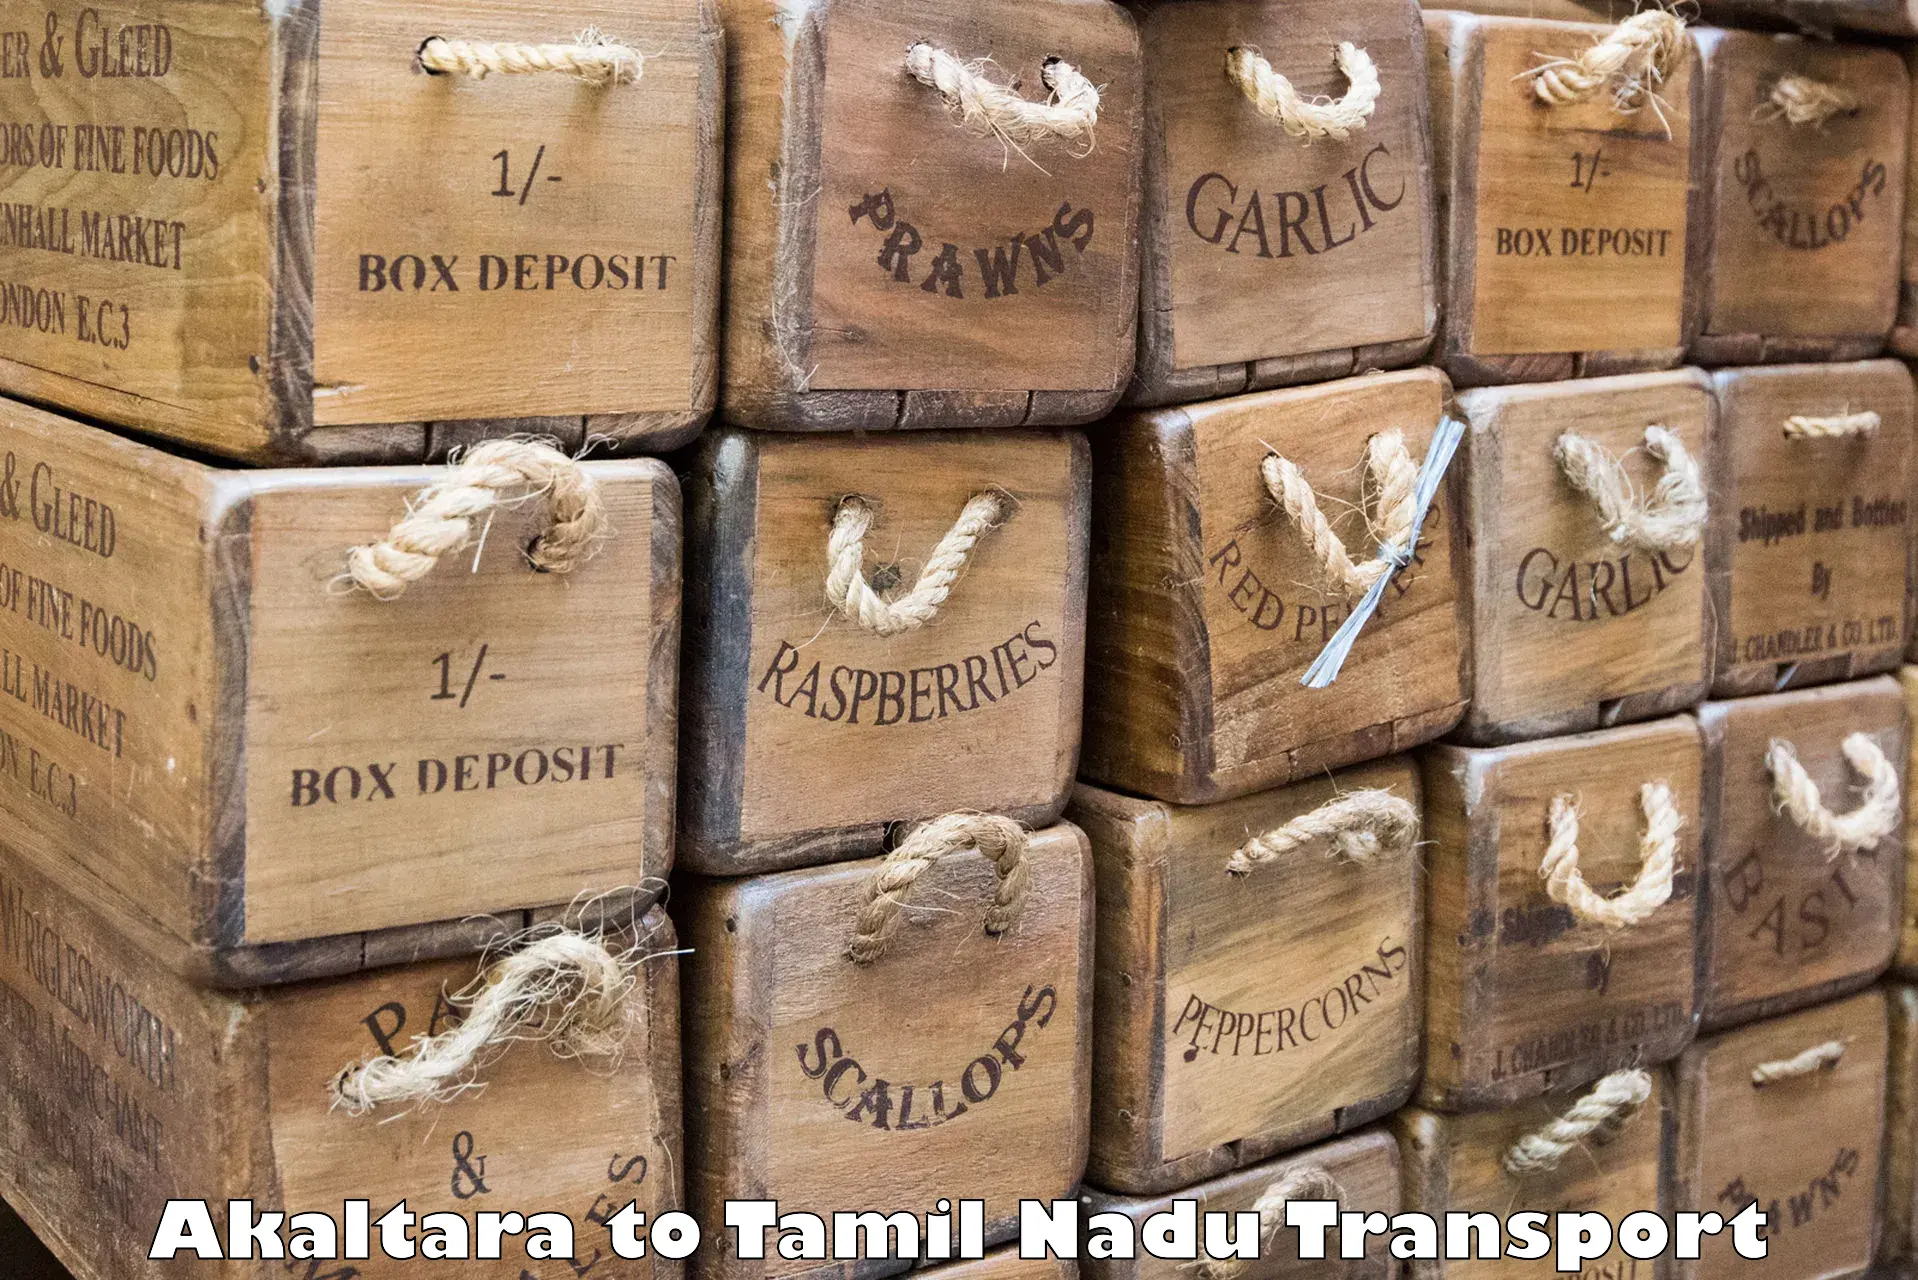 Daily transport service Akaltara to Melmaruvathur